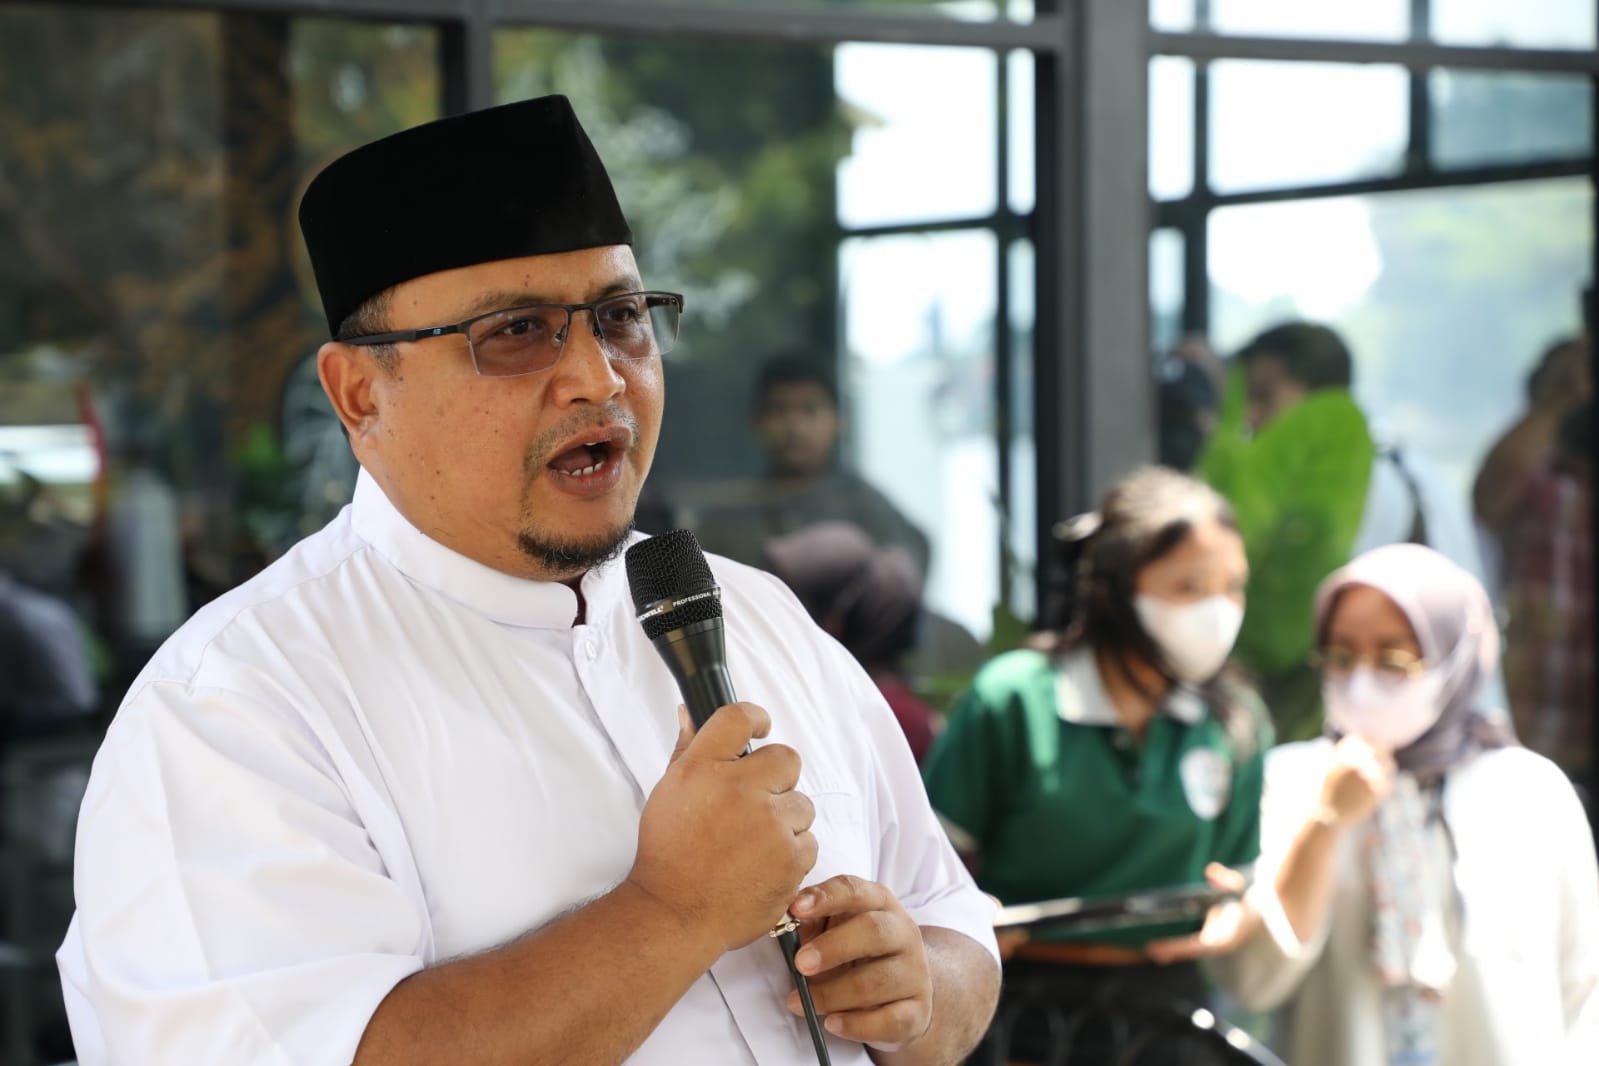 Ketua DPRD Kota Bogor Atang Trisnanto, menyebut telah menyampaikan aspirasi masyarakat dengan melayangkan surat ke senayan (Yudha Prananda / Jabar Ekspres)